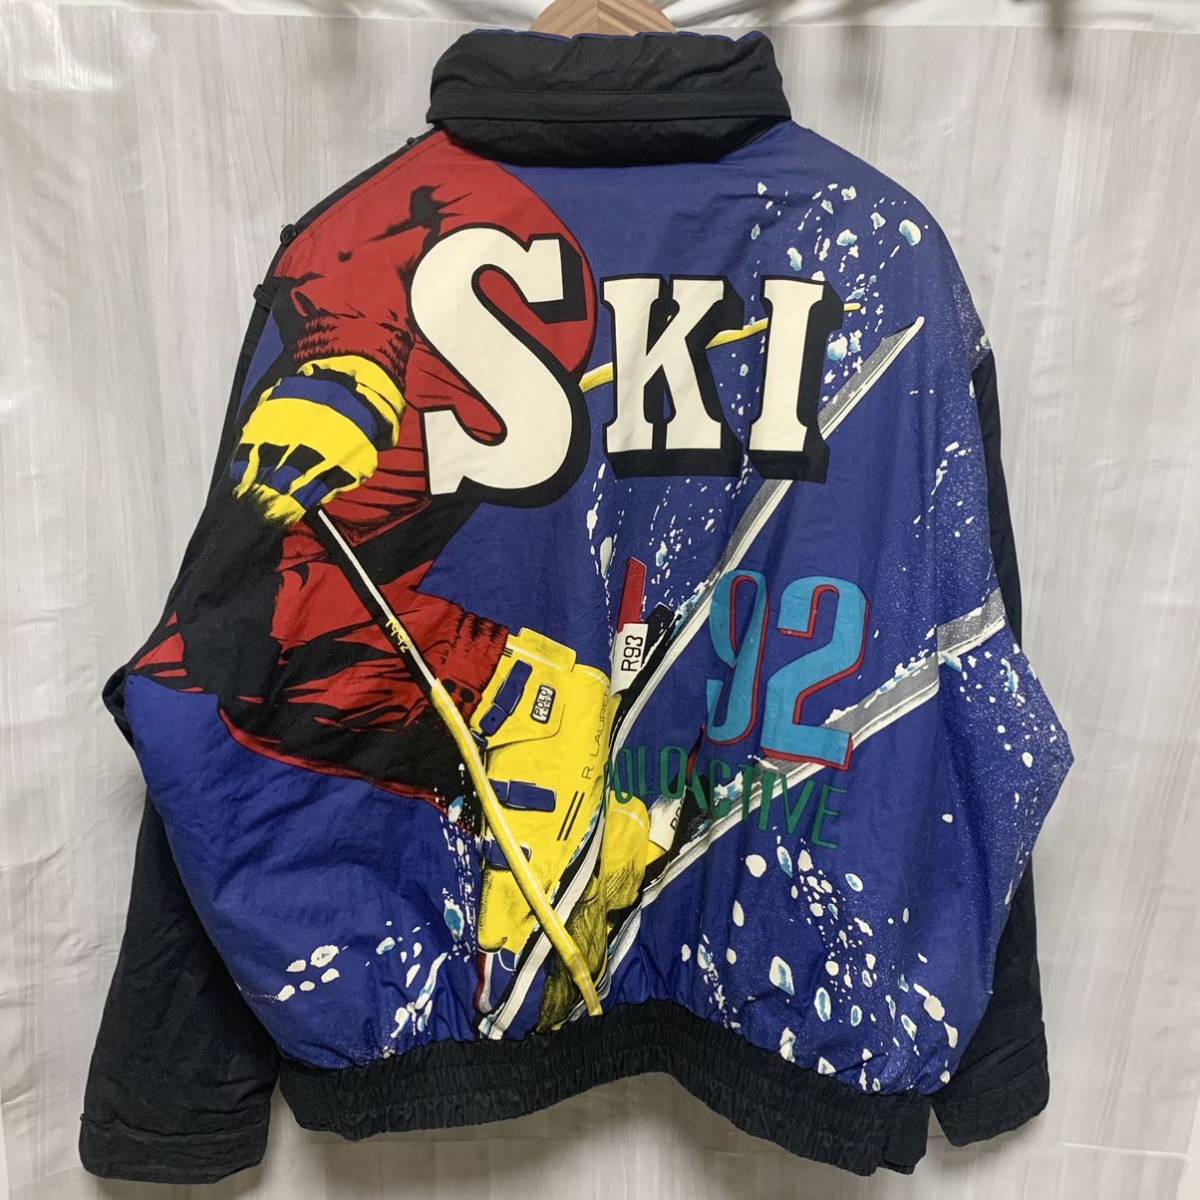 POLO RALPH LAUREN ポロラルフローレン スキー ジャケット 1992 92 L